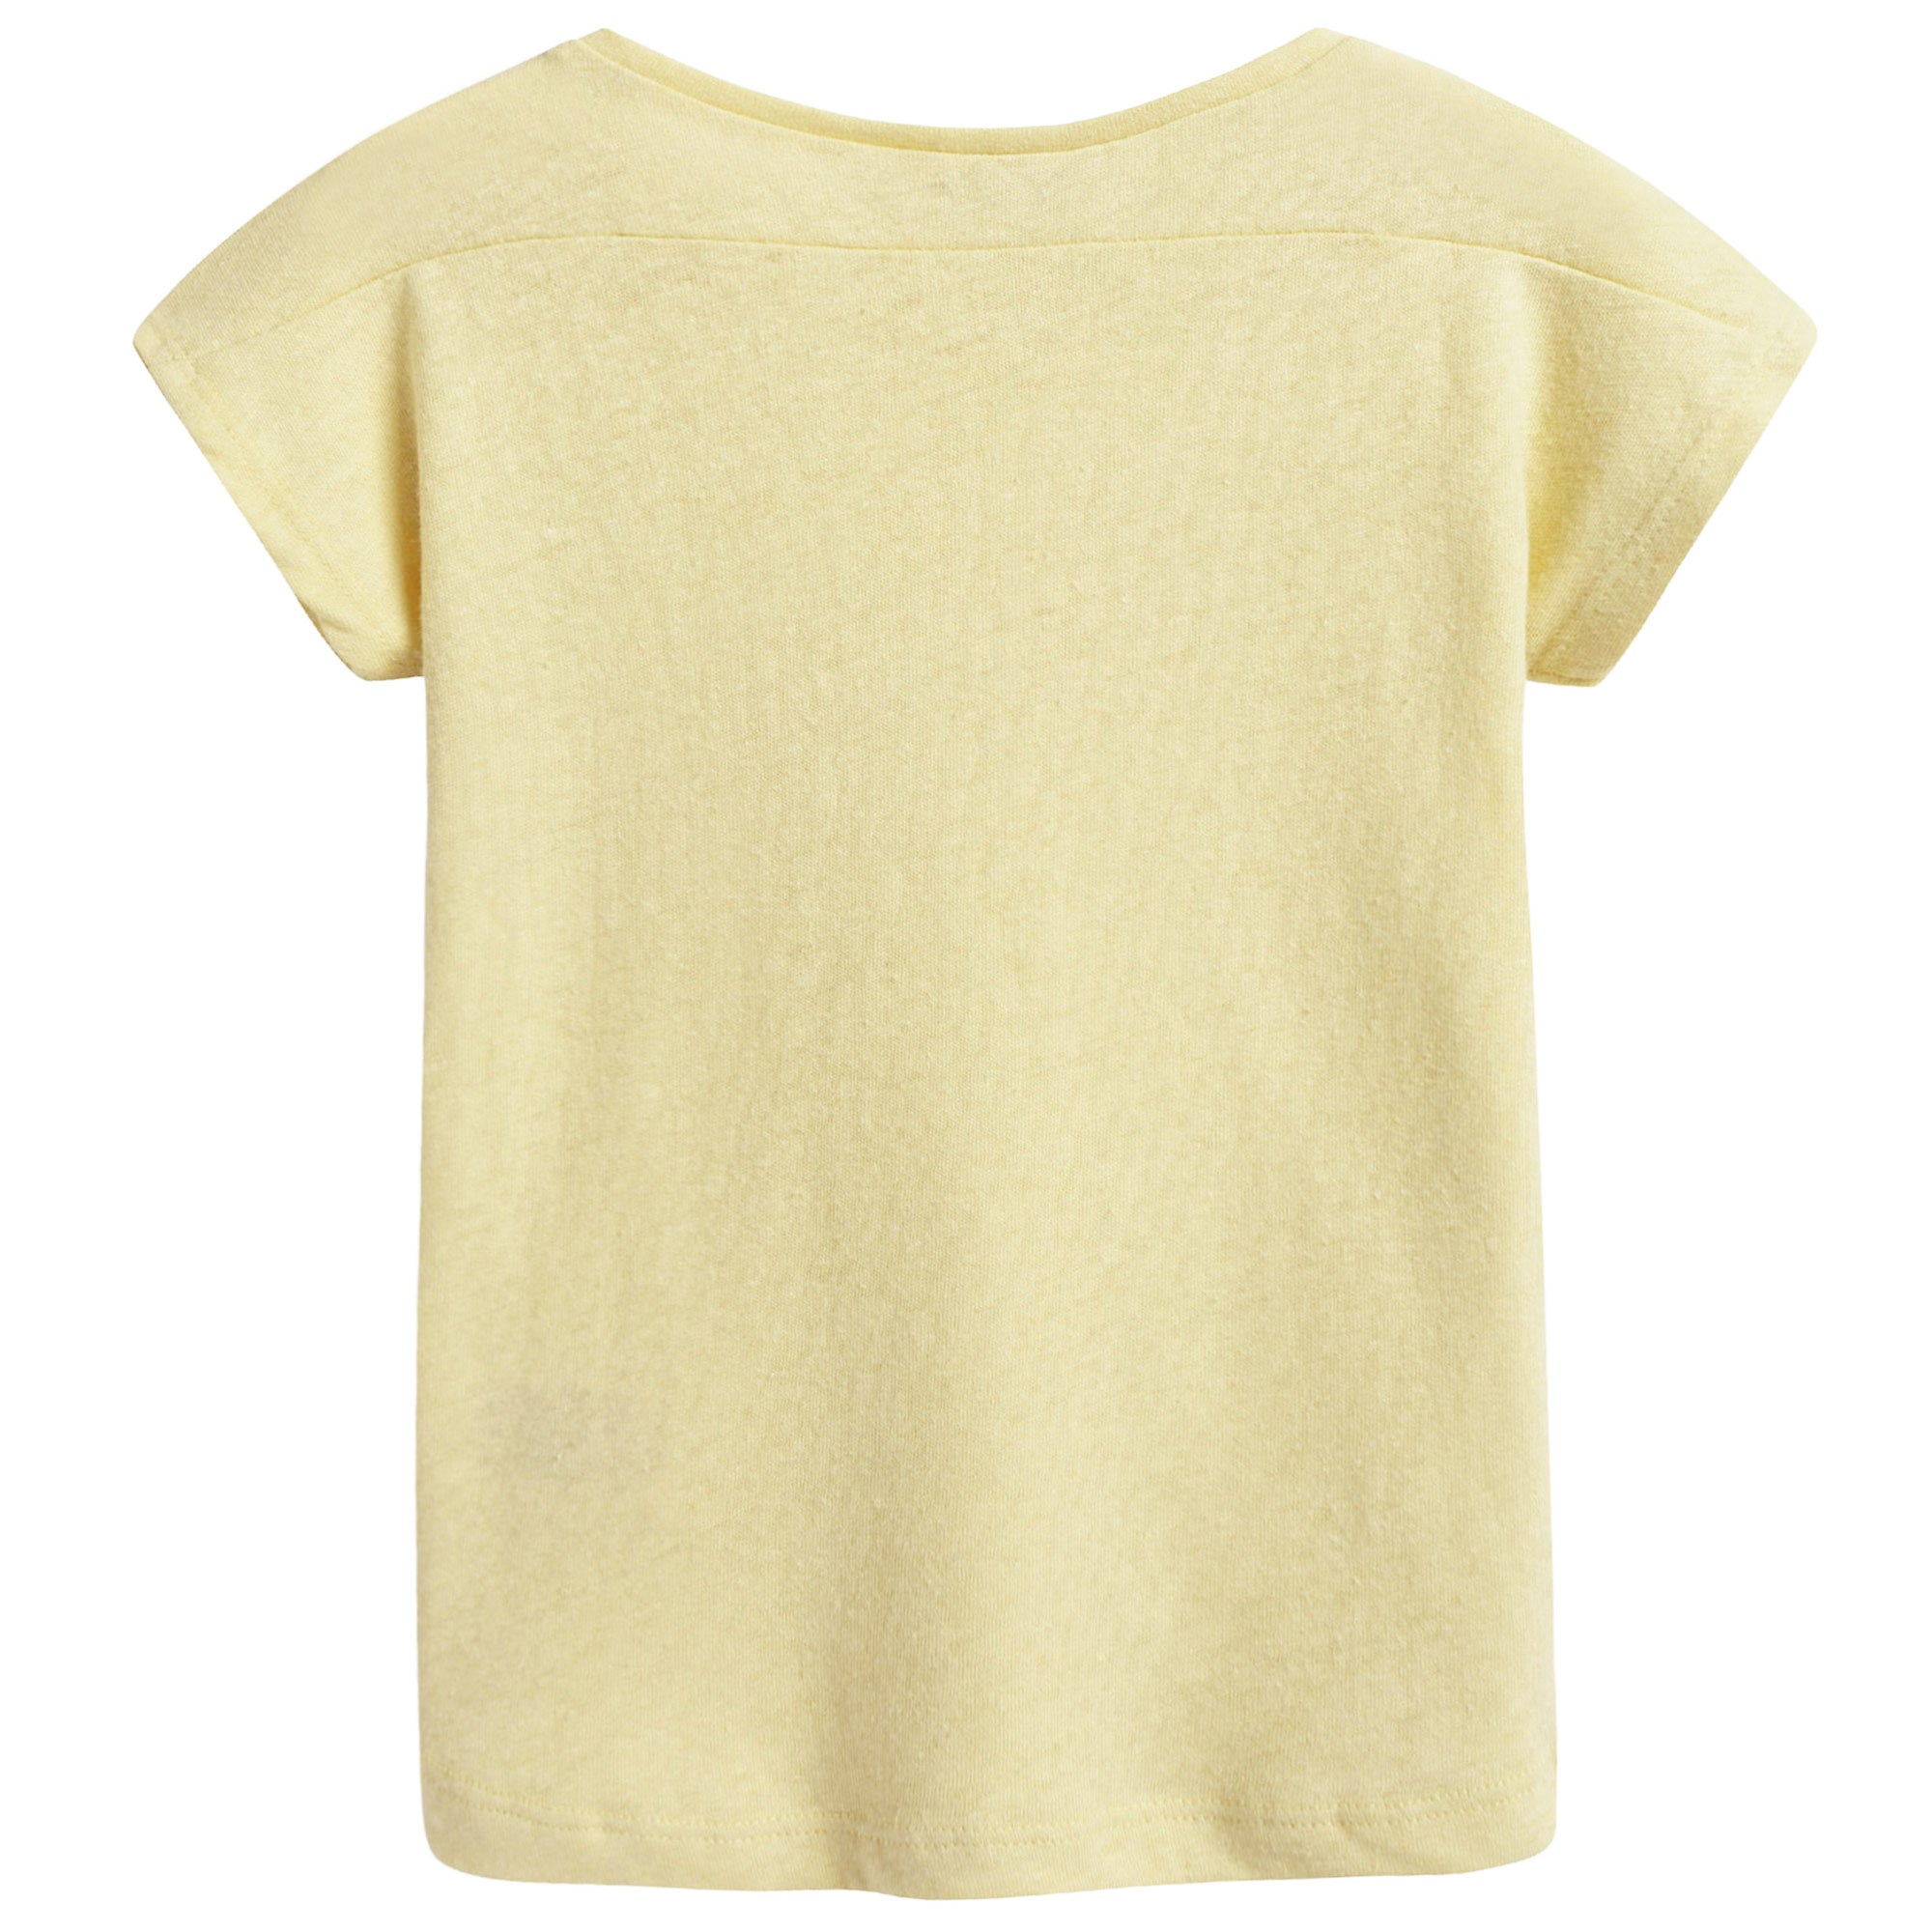 Boys & Girls Light Yellow Jersey T-shirt